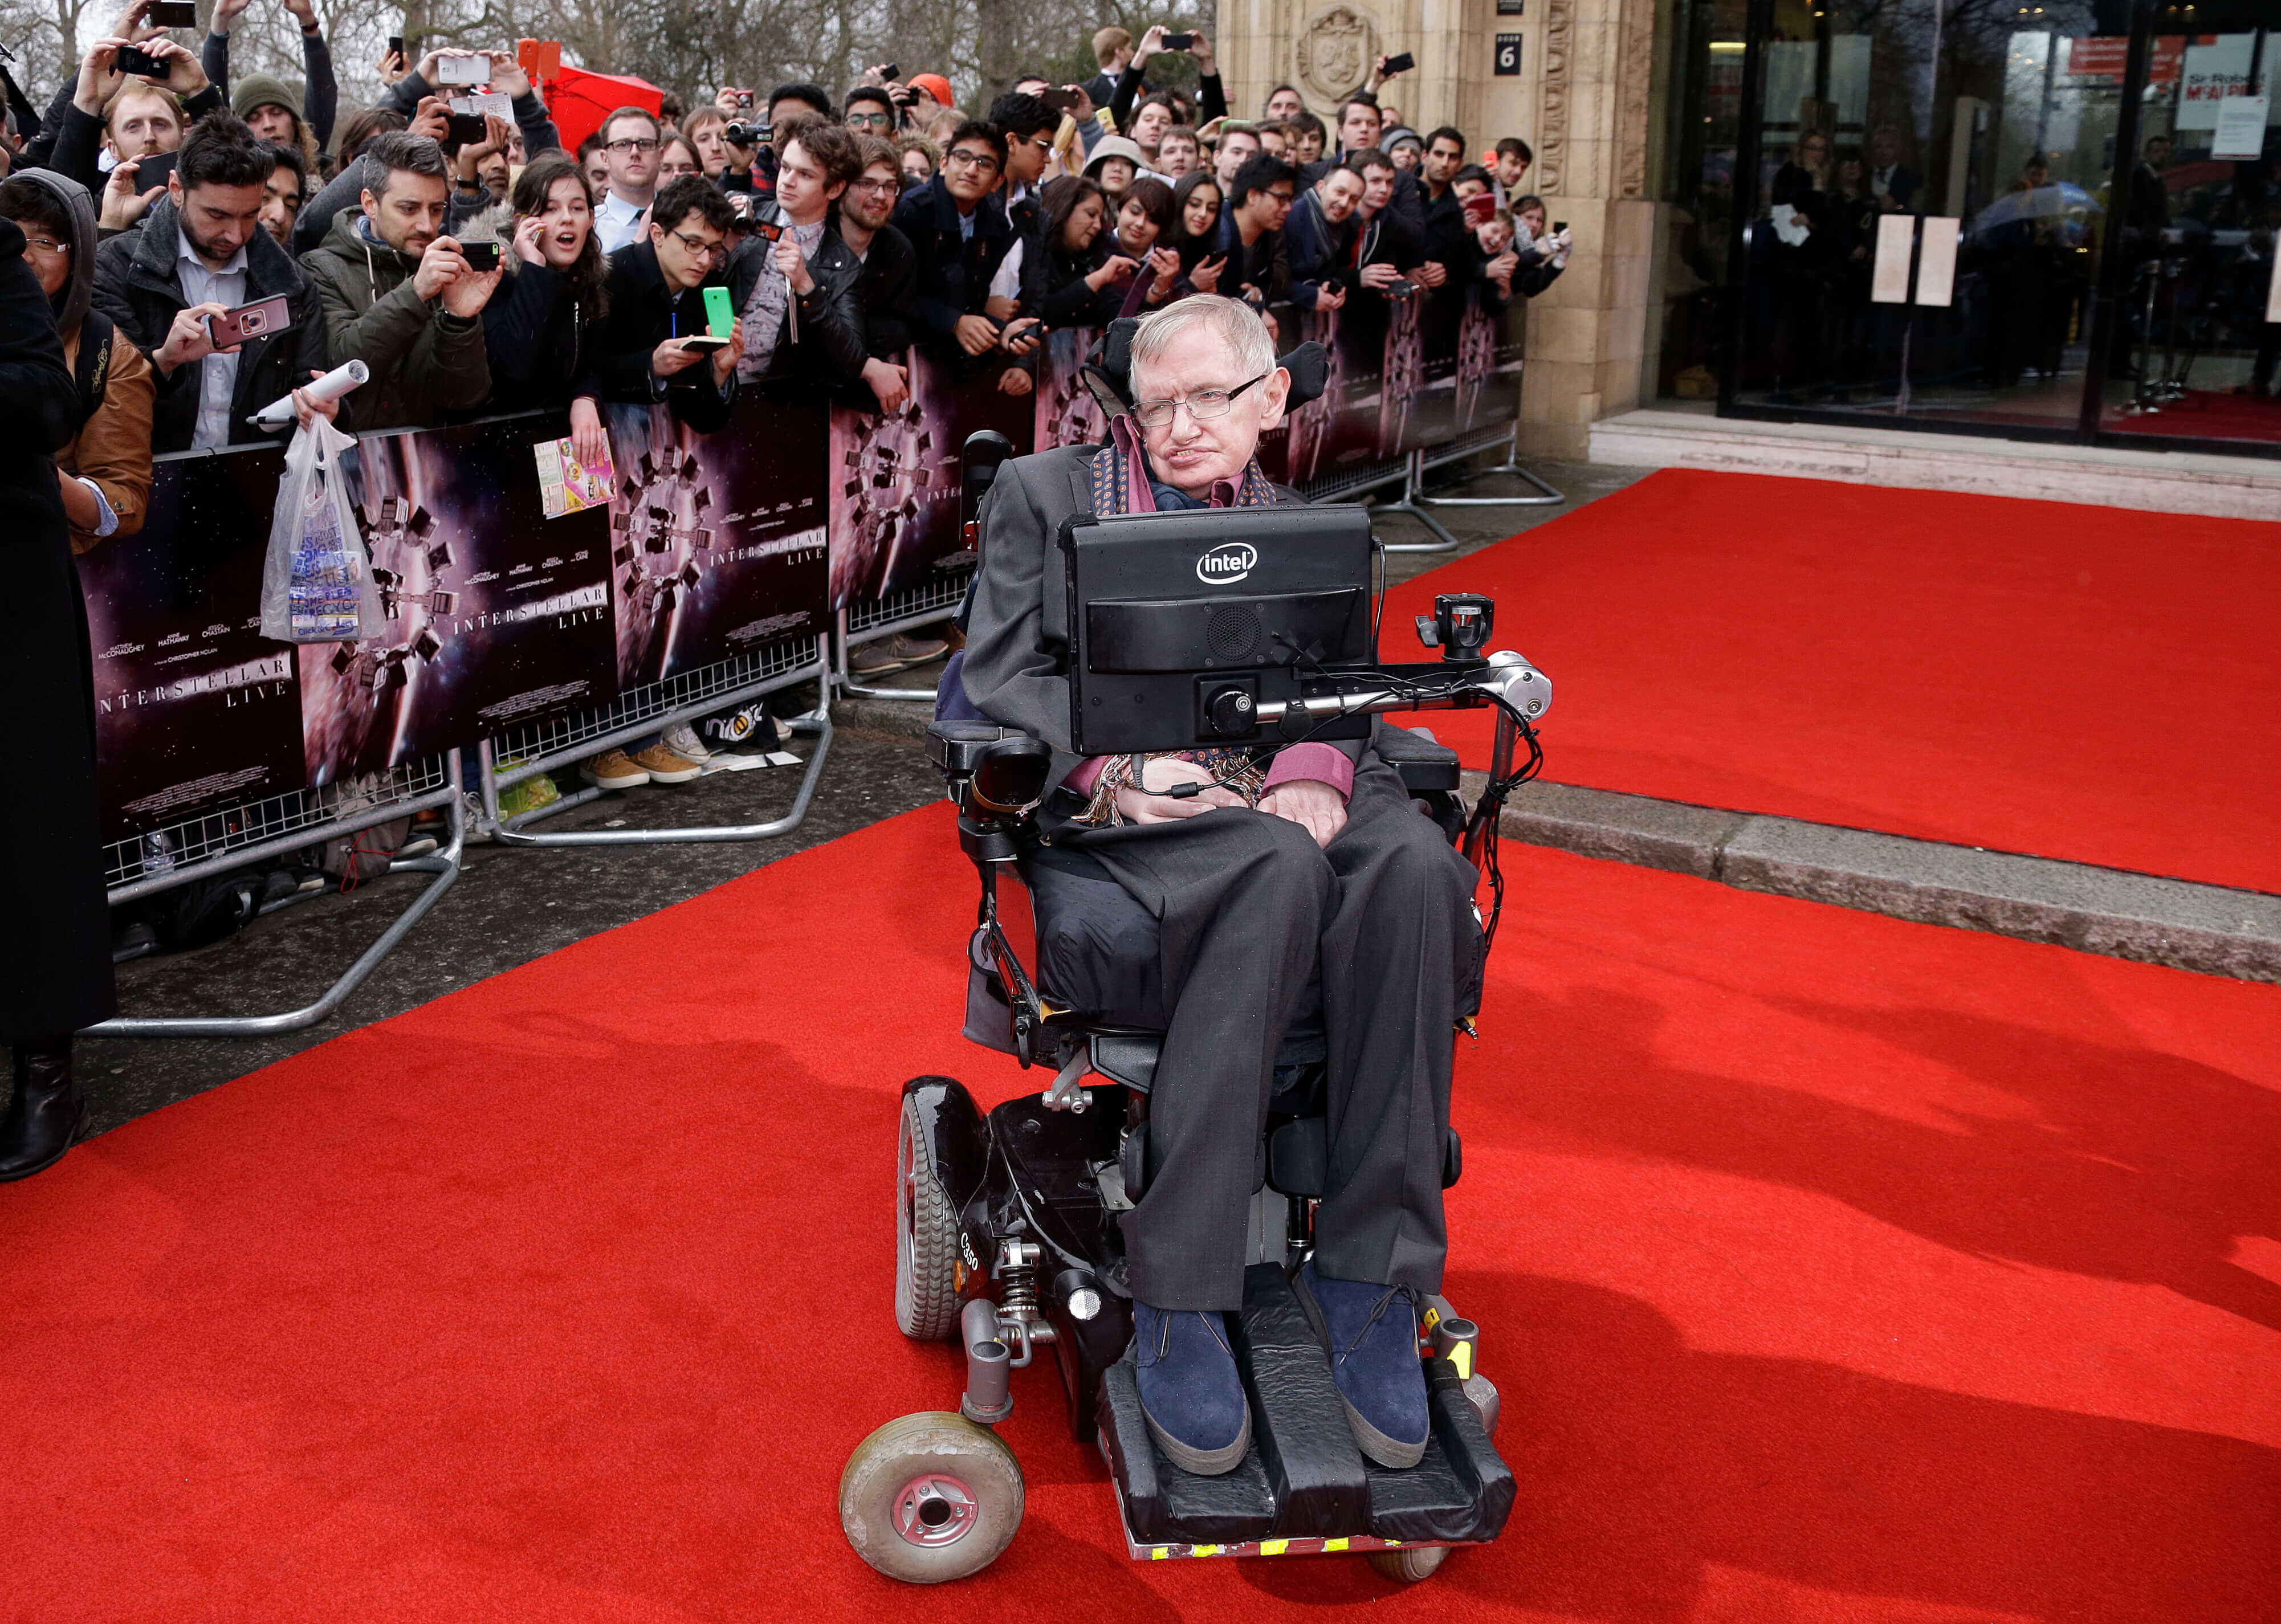 FOTO Enfermera de Stephen Hawking no atendió bien al científico y ya fue suspendida de su oficio AP londres